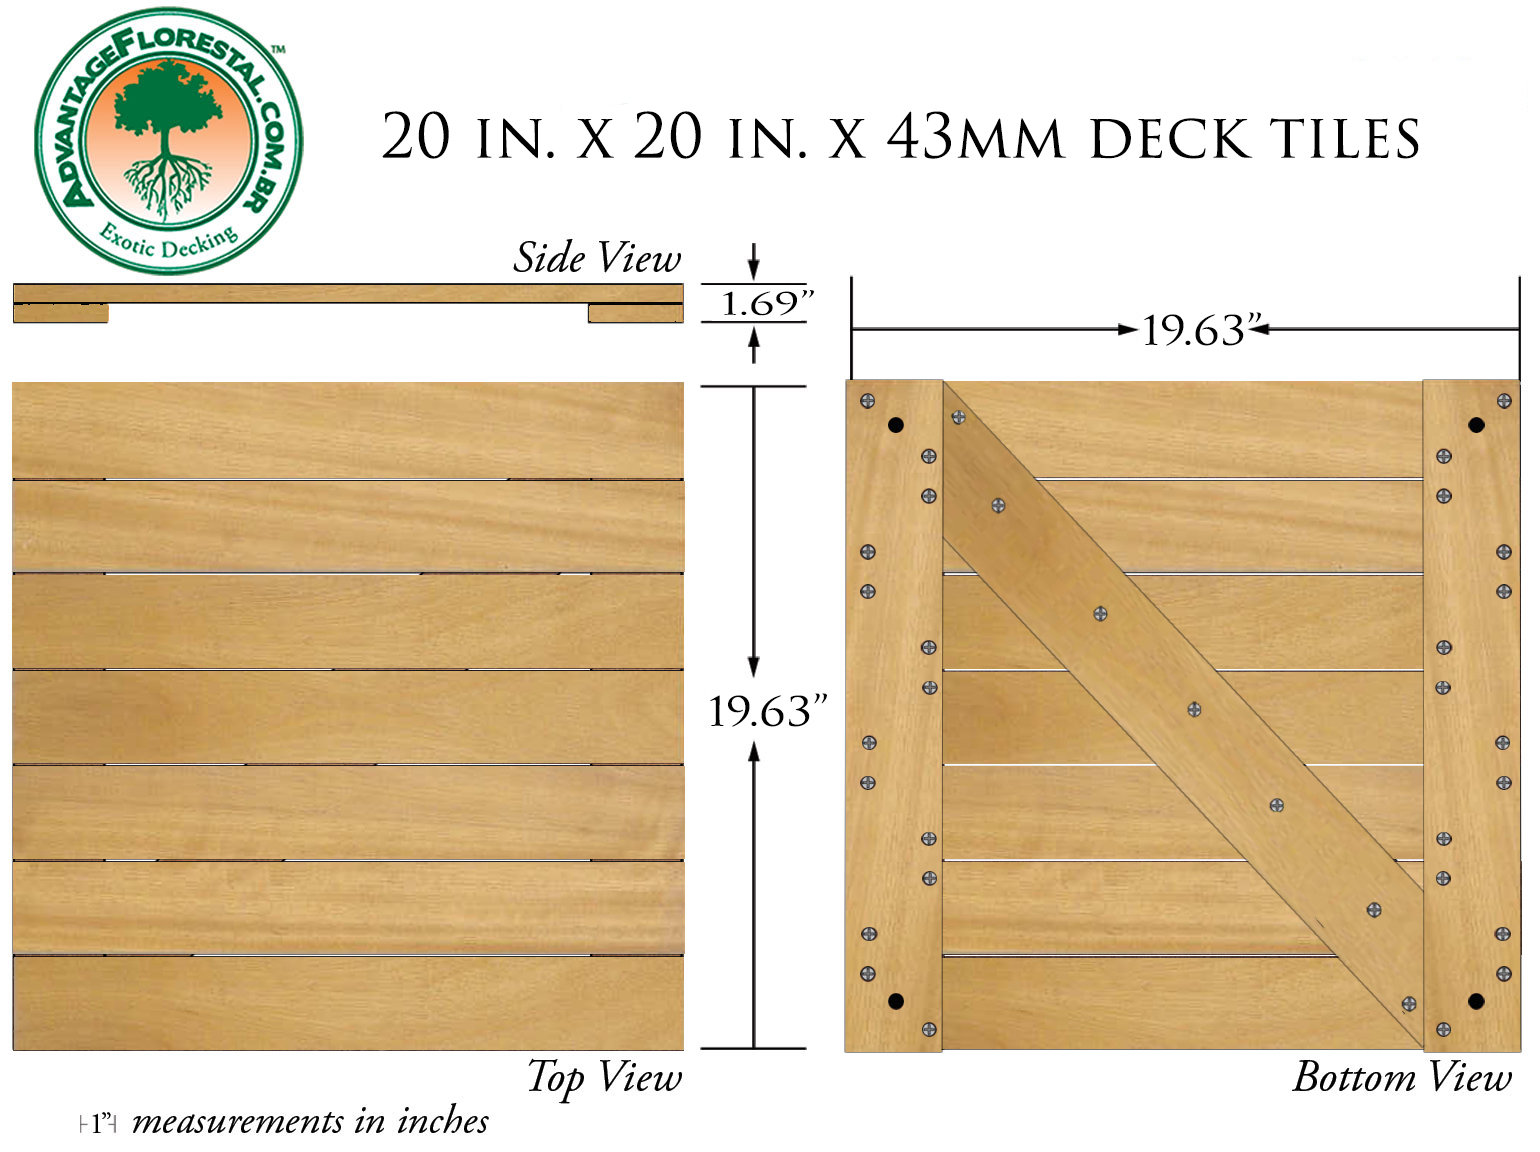 Tatajuba Deck Tile 20 in. x 20 in. x 43mm